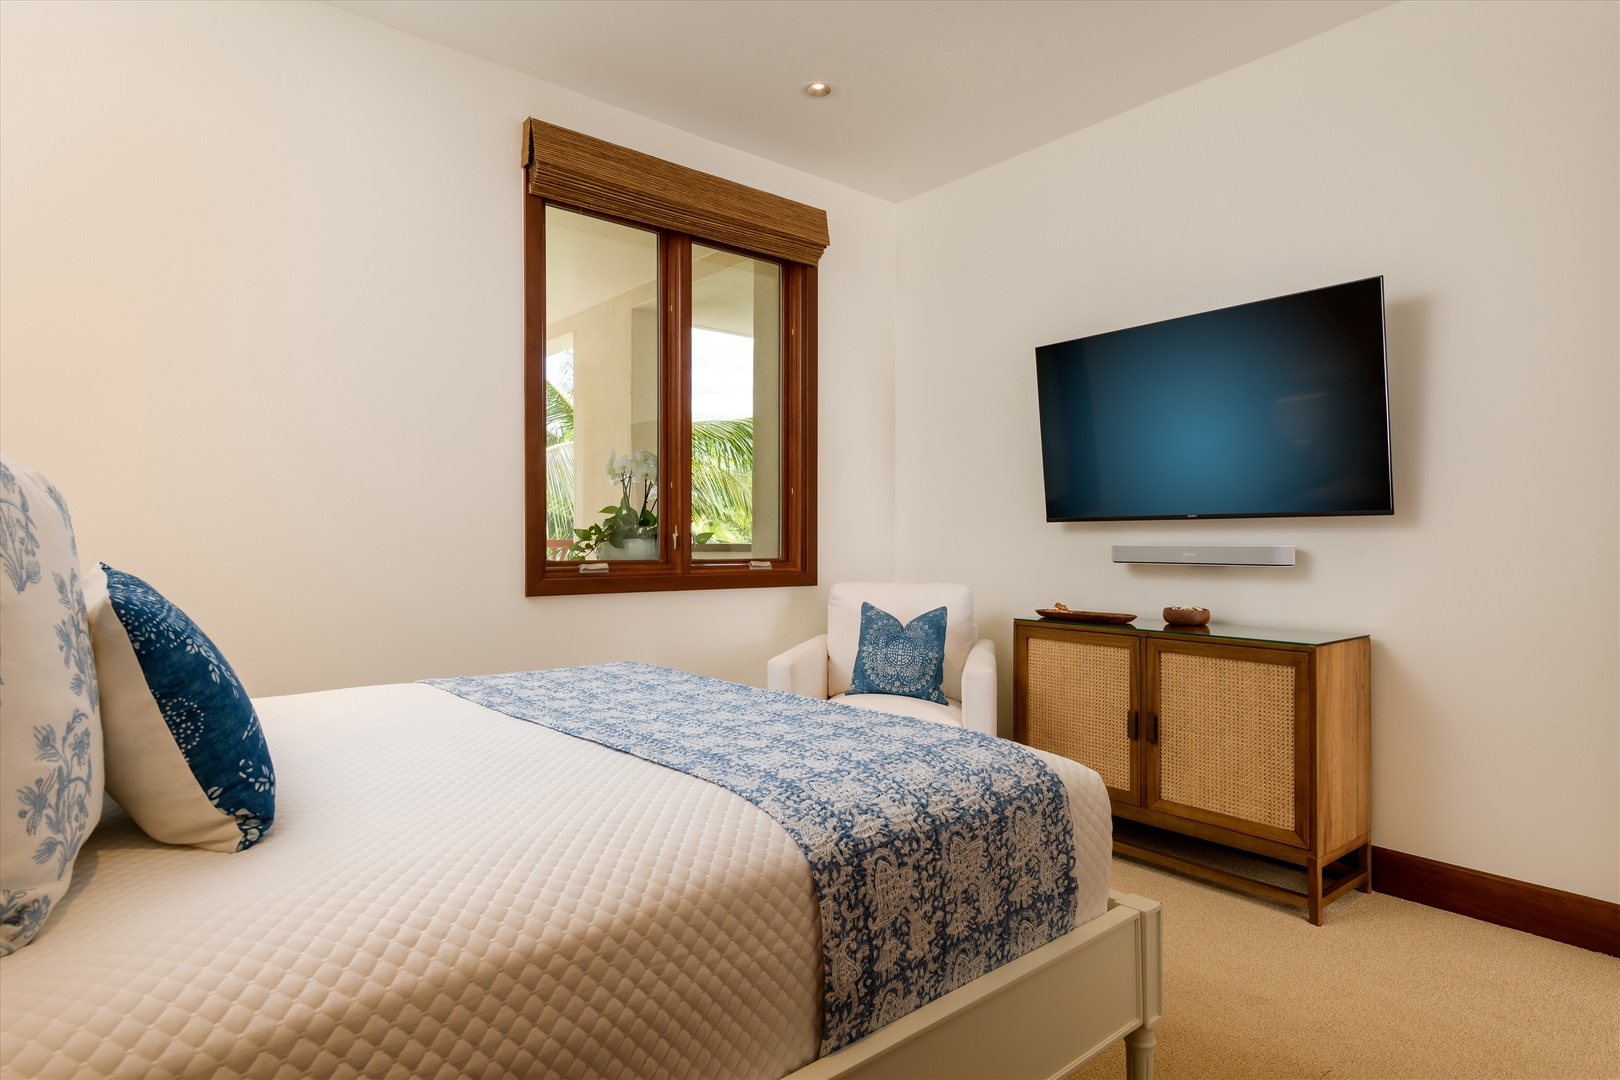 Wailea Vacation Rentals, Blue Ocean Suite H401 at Wailea Beach Villas* - 3rd Bedroom